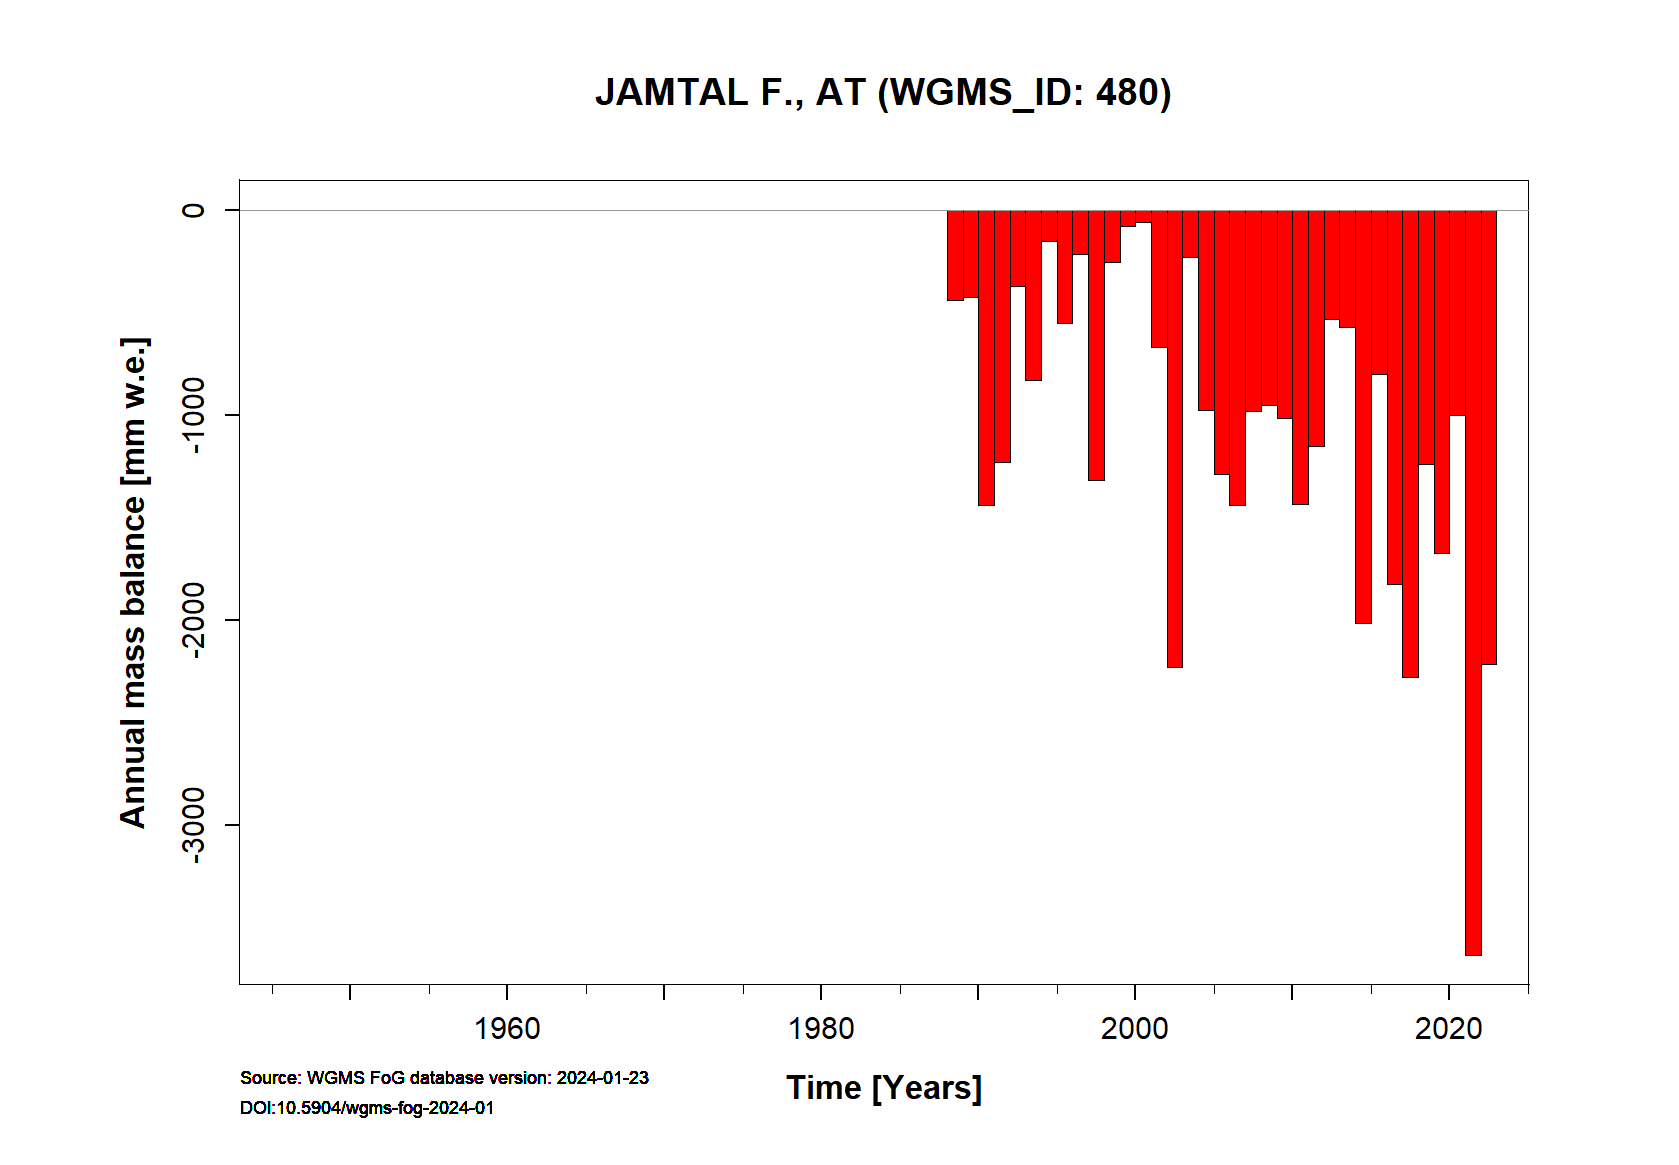 Jamtalferner Annual Mass Balance (WGMS, 2021)